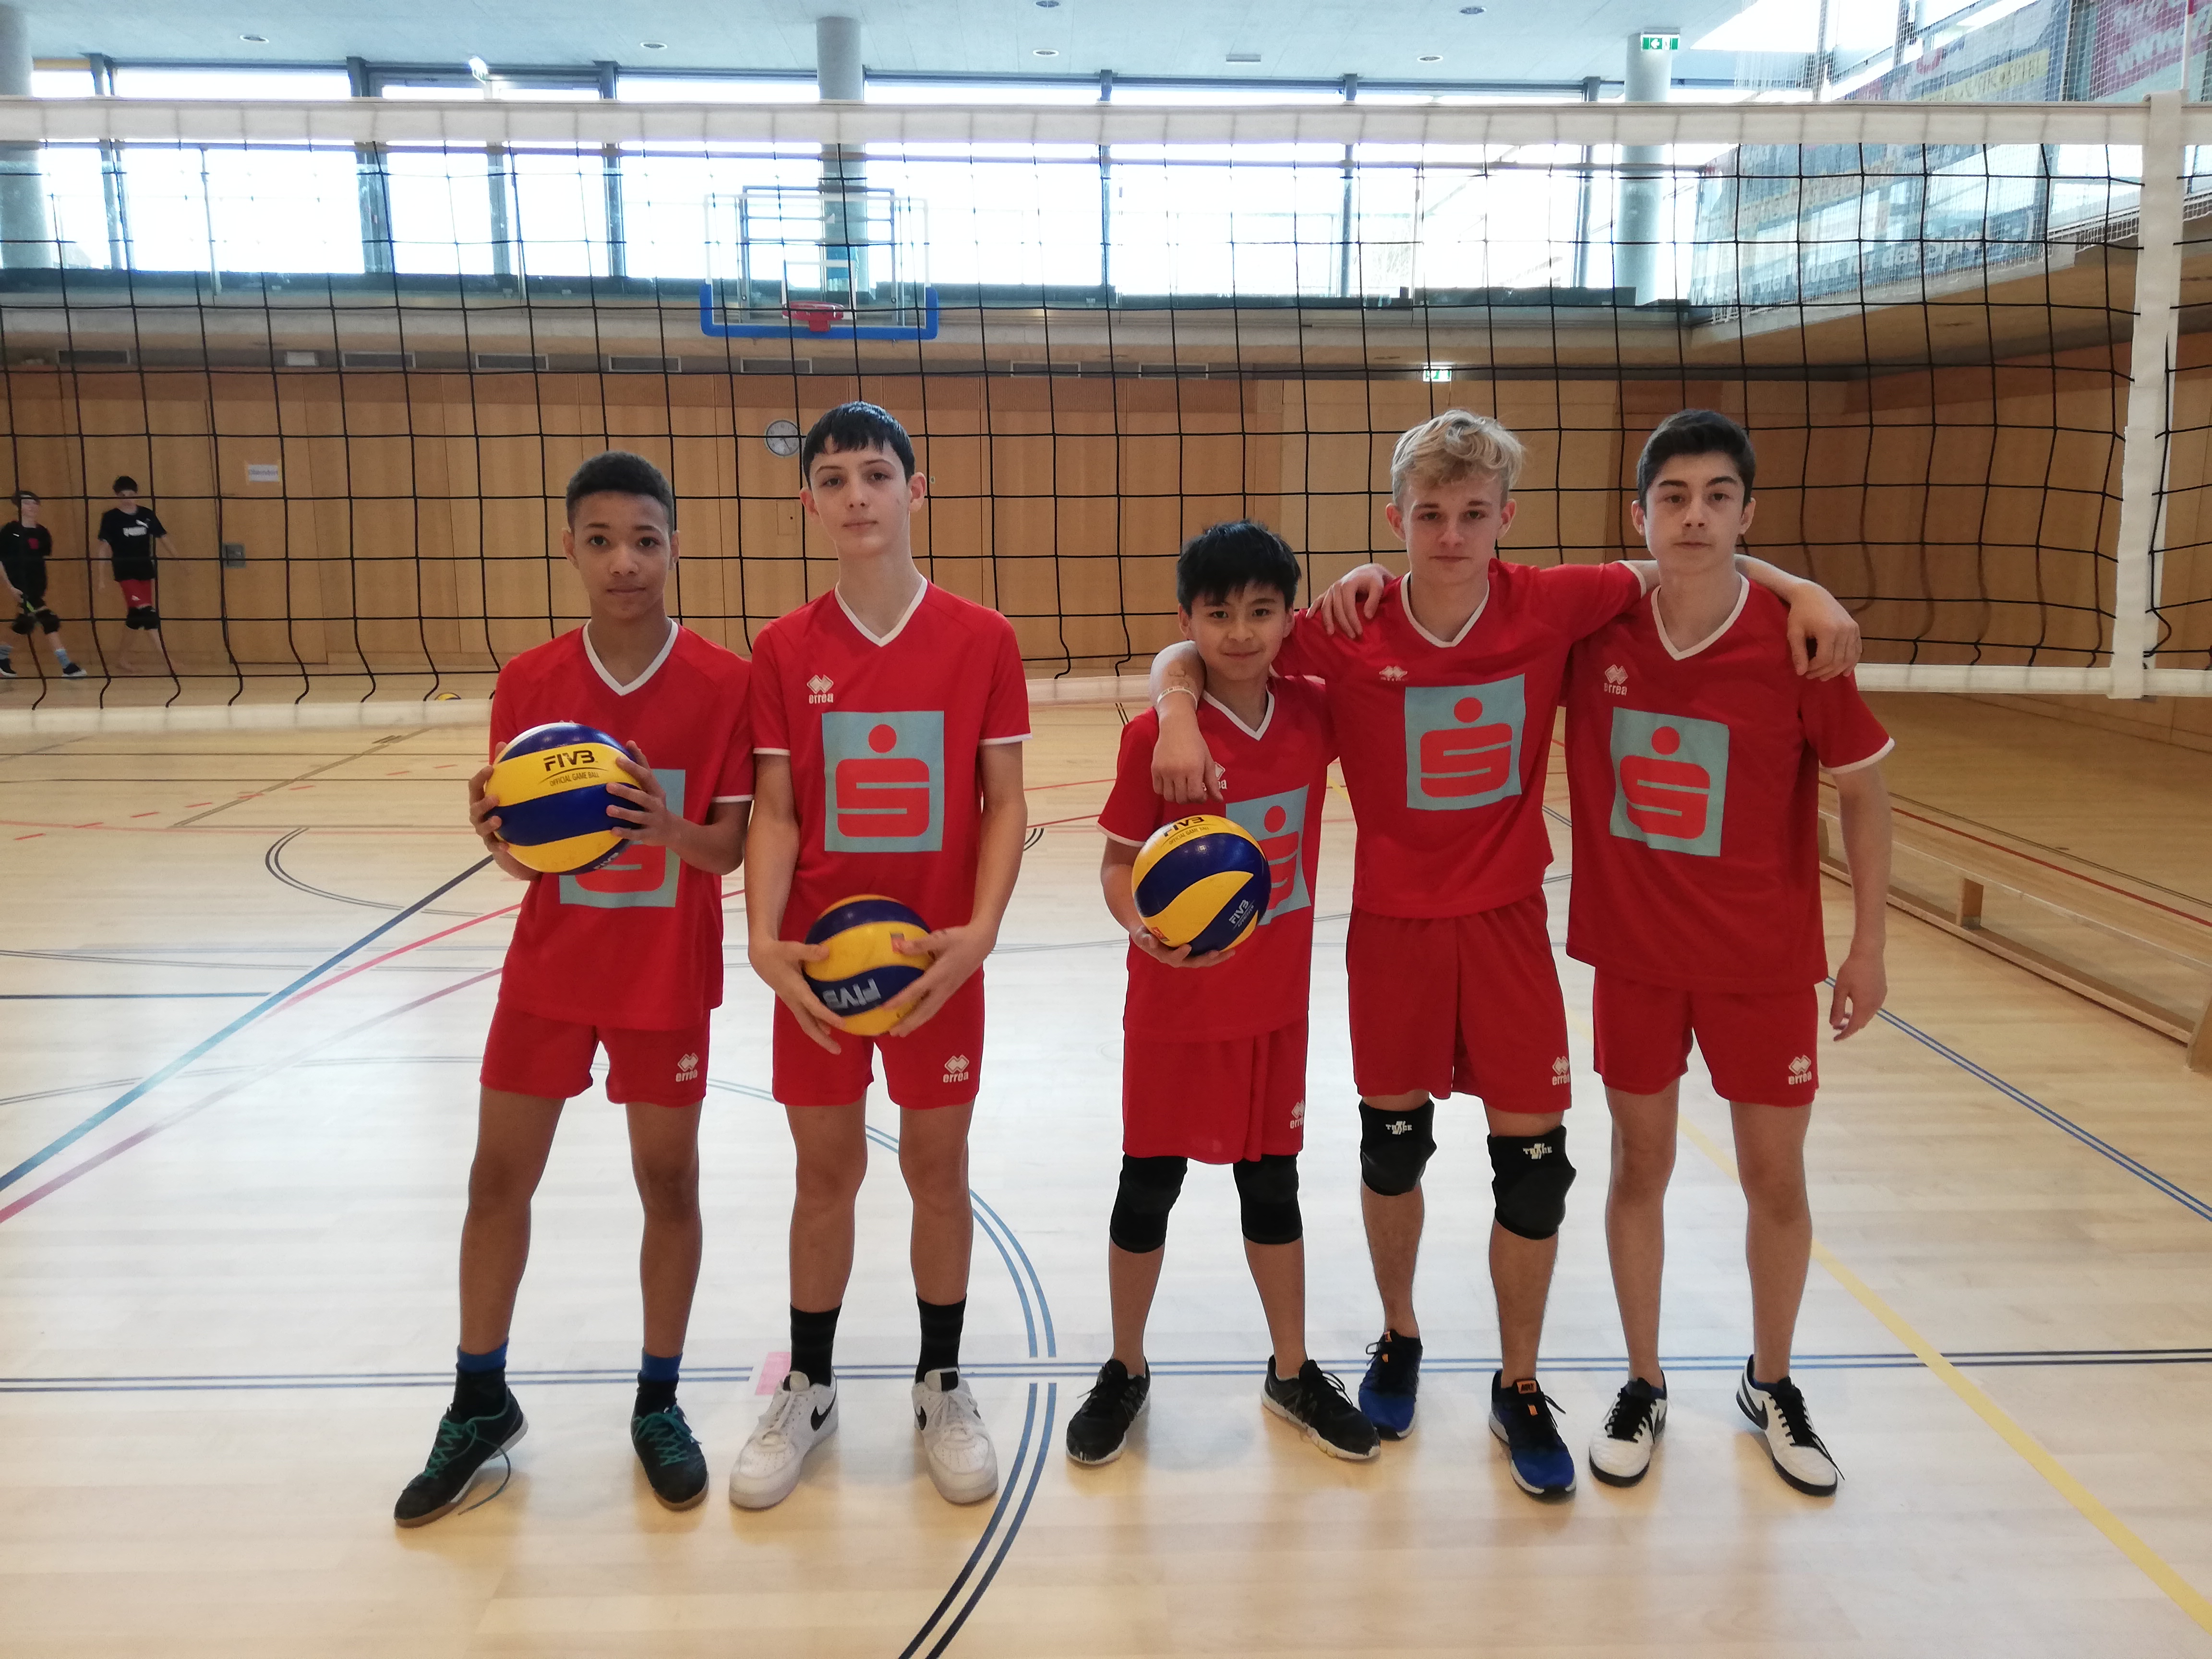 Boys Landesmeisterschaften Volleyball 2019/20